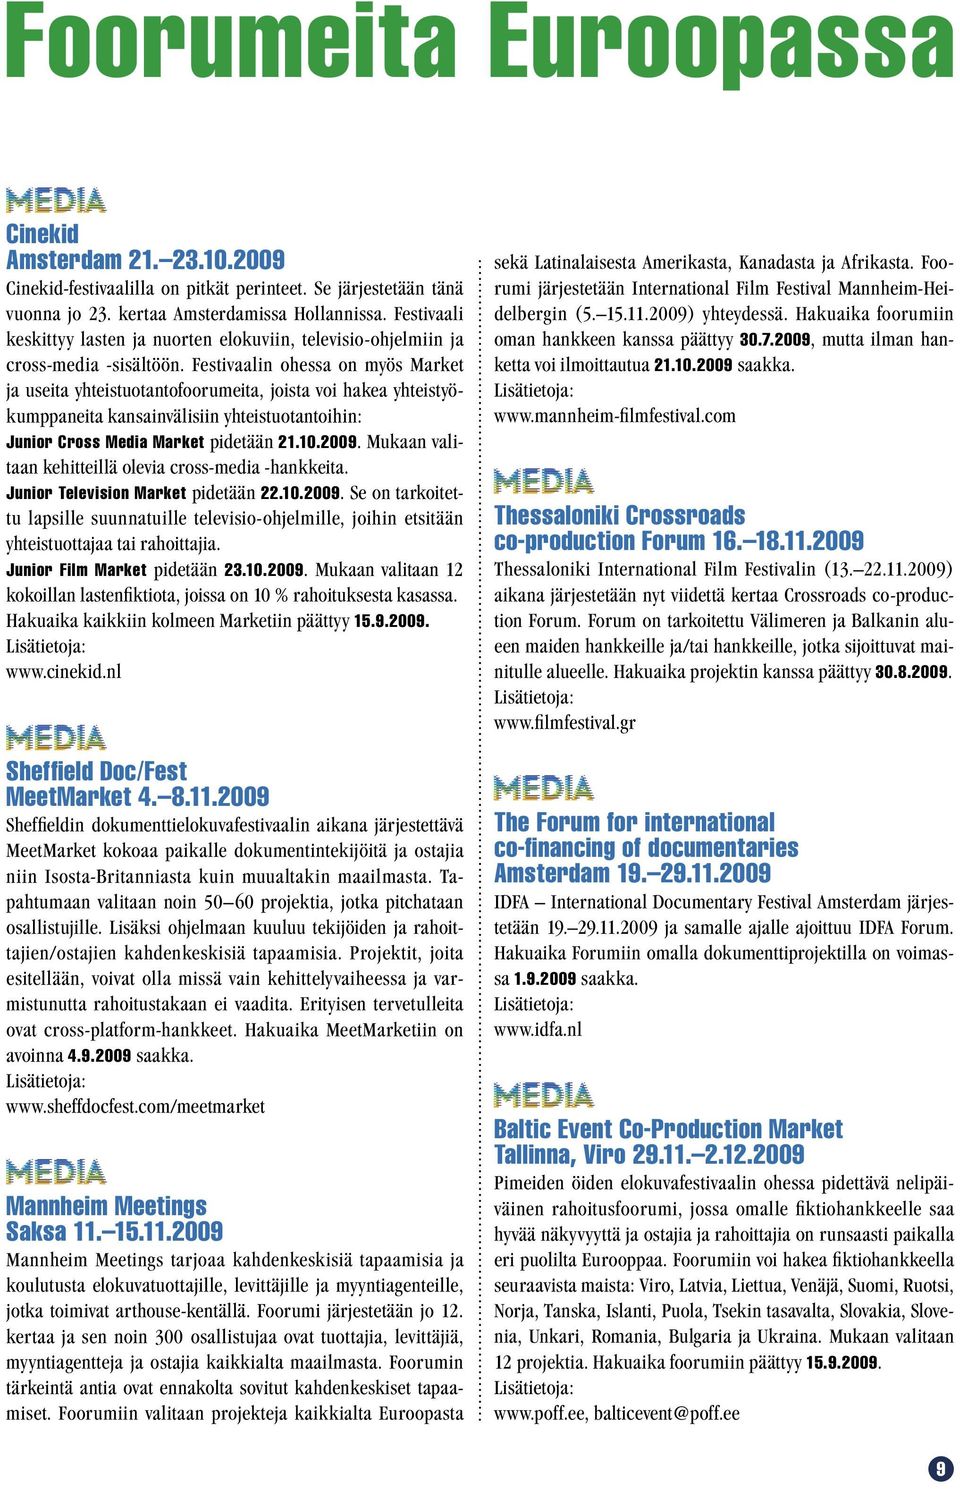 Festivaalin ohessa on myös Market ja useita yhteistuotantofoorumeita, joista voi hakea yhteistyökumppaneita kansainvälisiin yhteistuotantoihin: Junior Cross Media Market pidetään 21.10.2009.